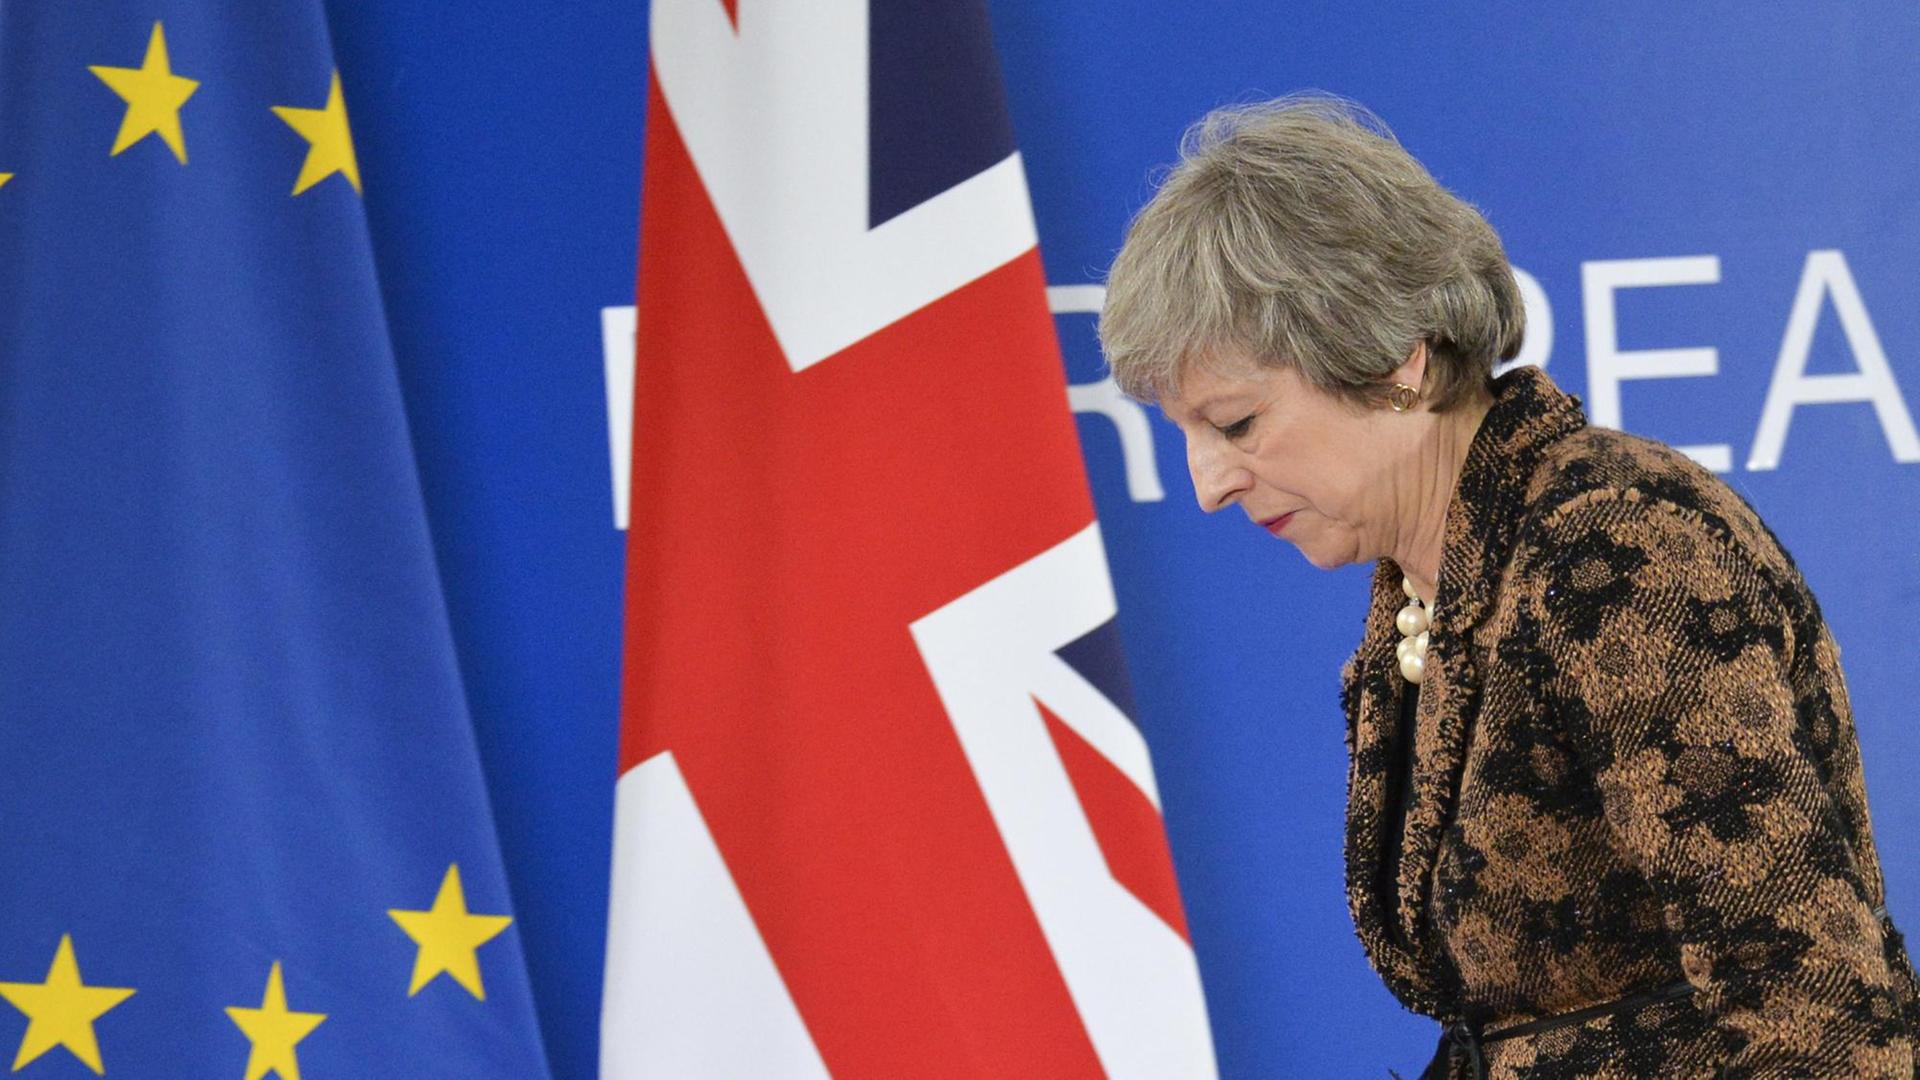 May läuft gebeugt an einer EU- und einer Gr0ßbritannien-Flagge vorbei.